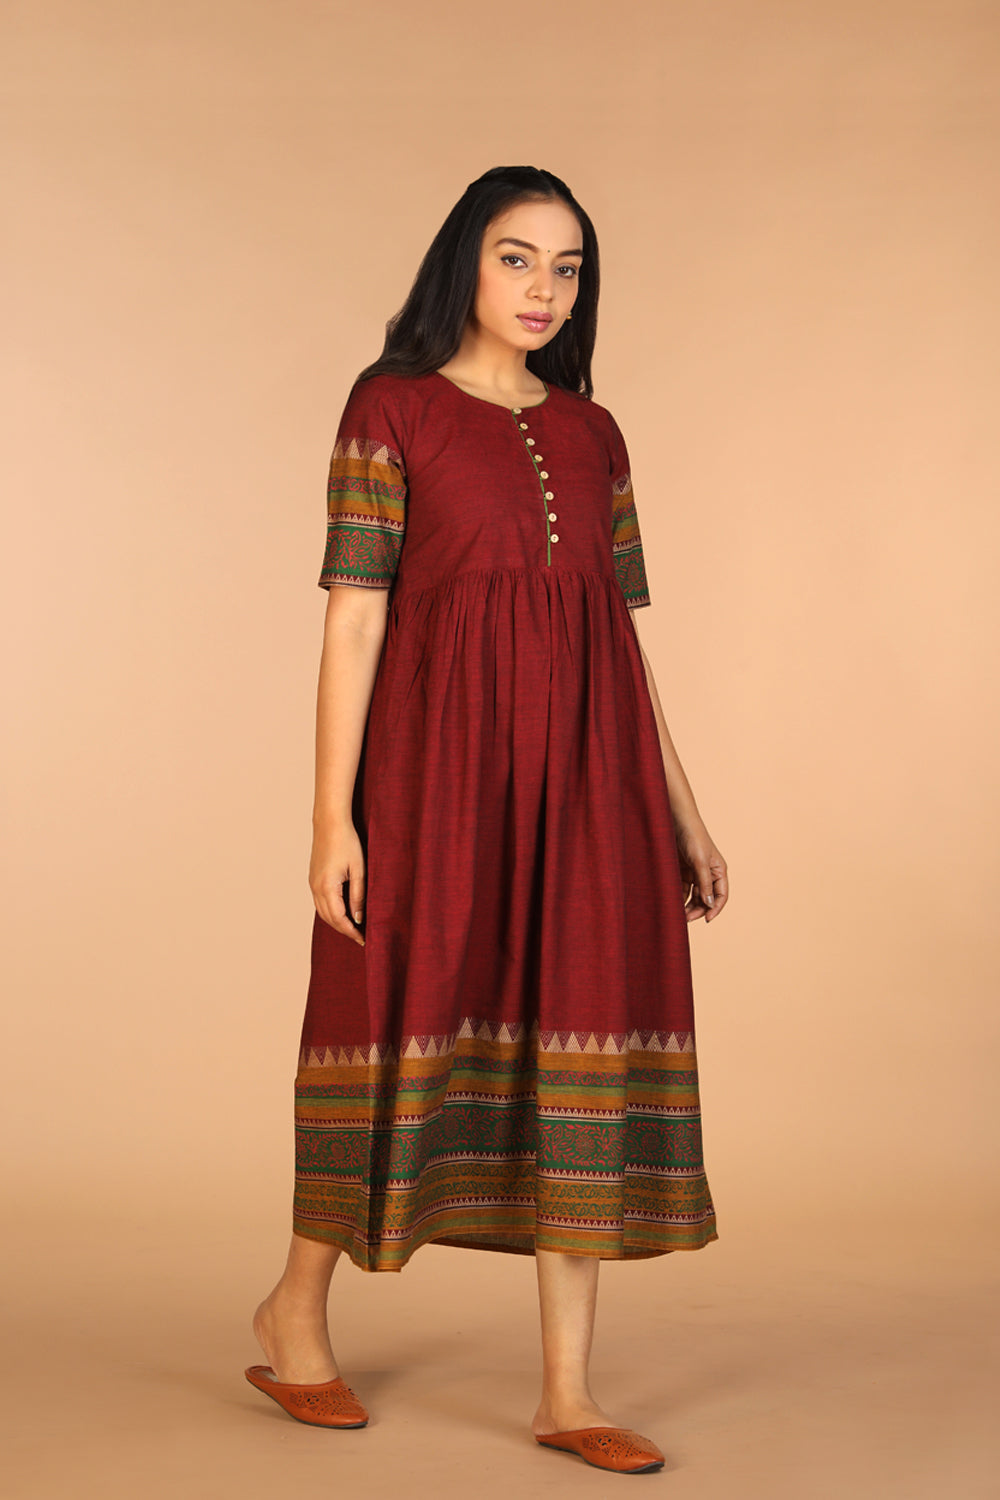 Woven ethnic dress